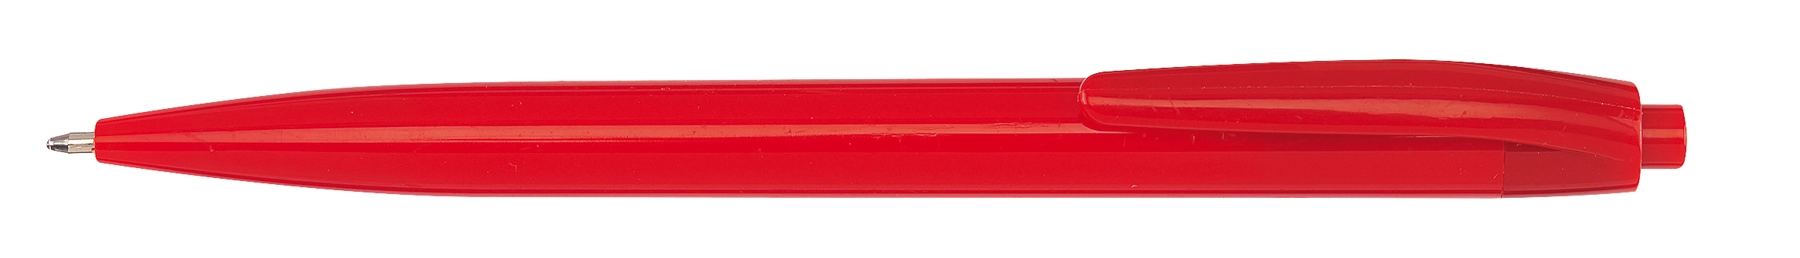 Długopis PLAIN, czerwony 56-1101959 czerwony